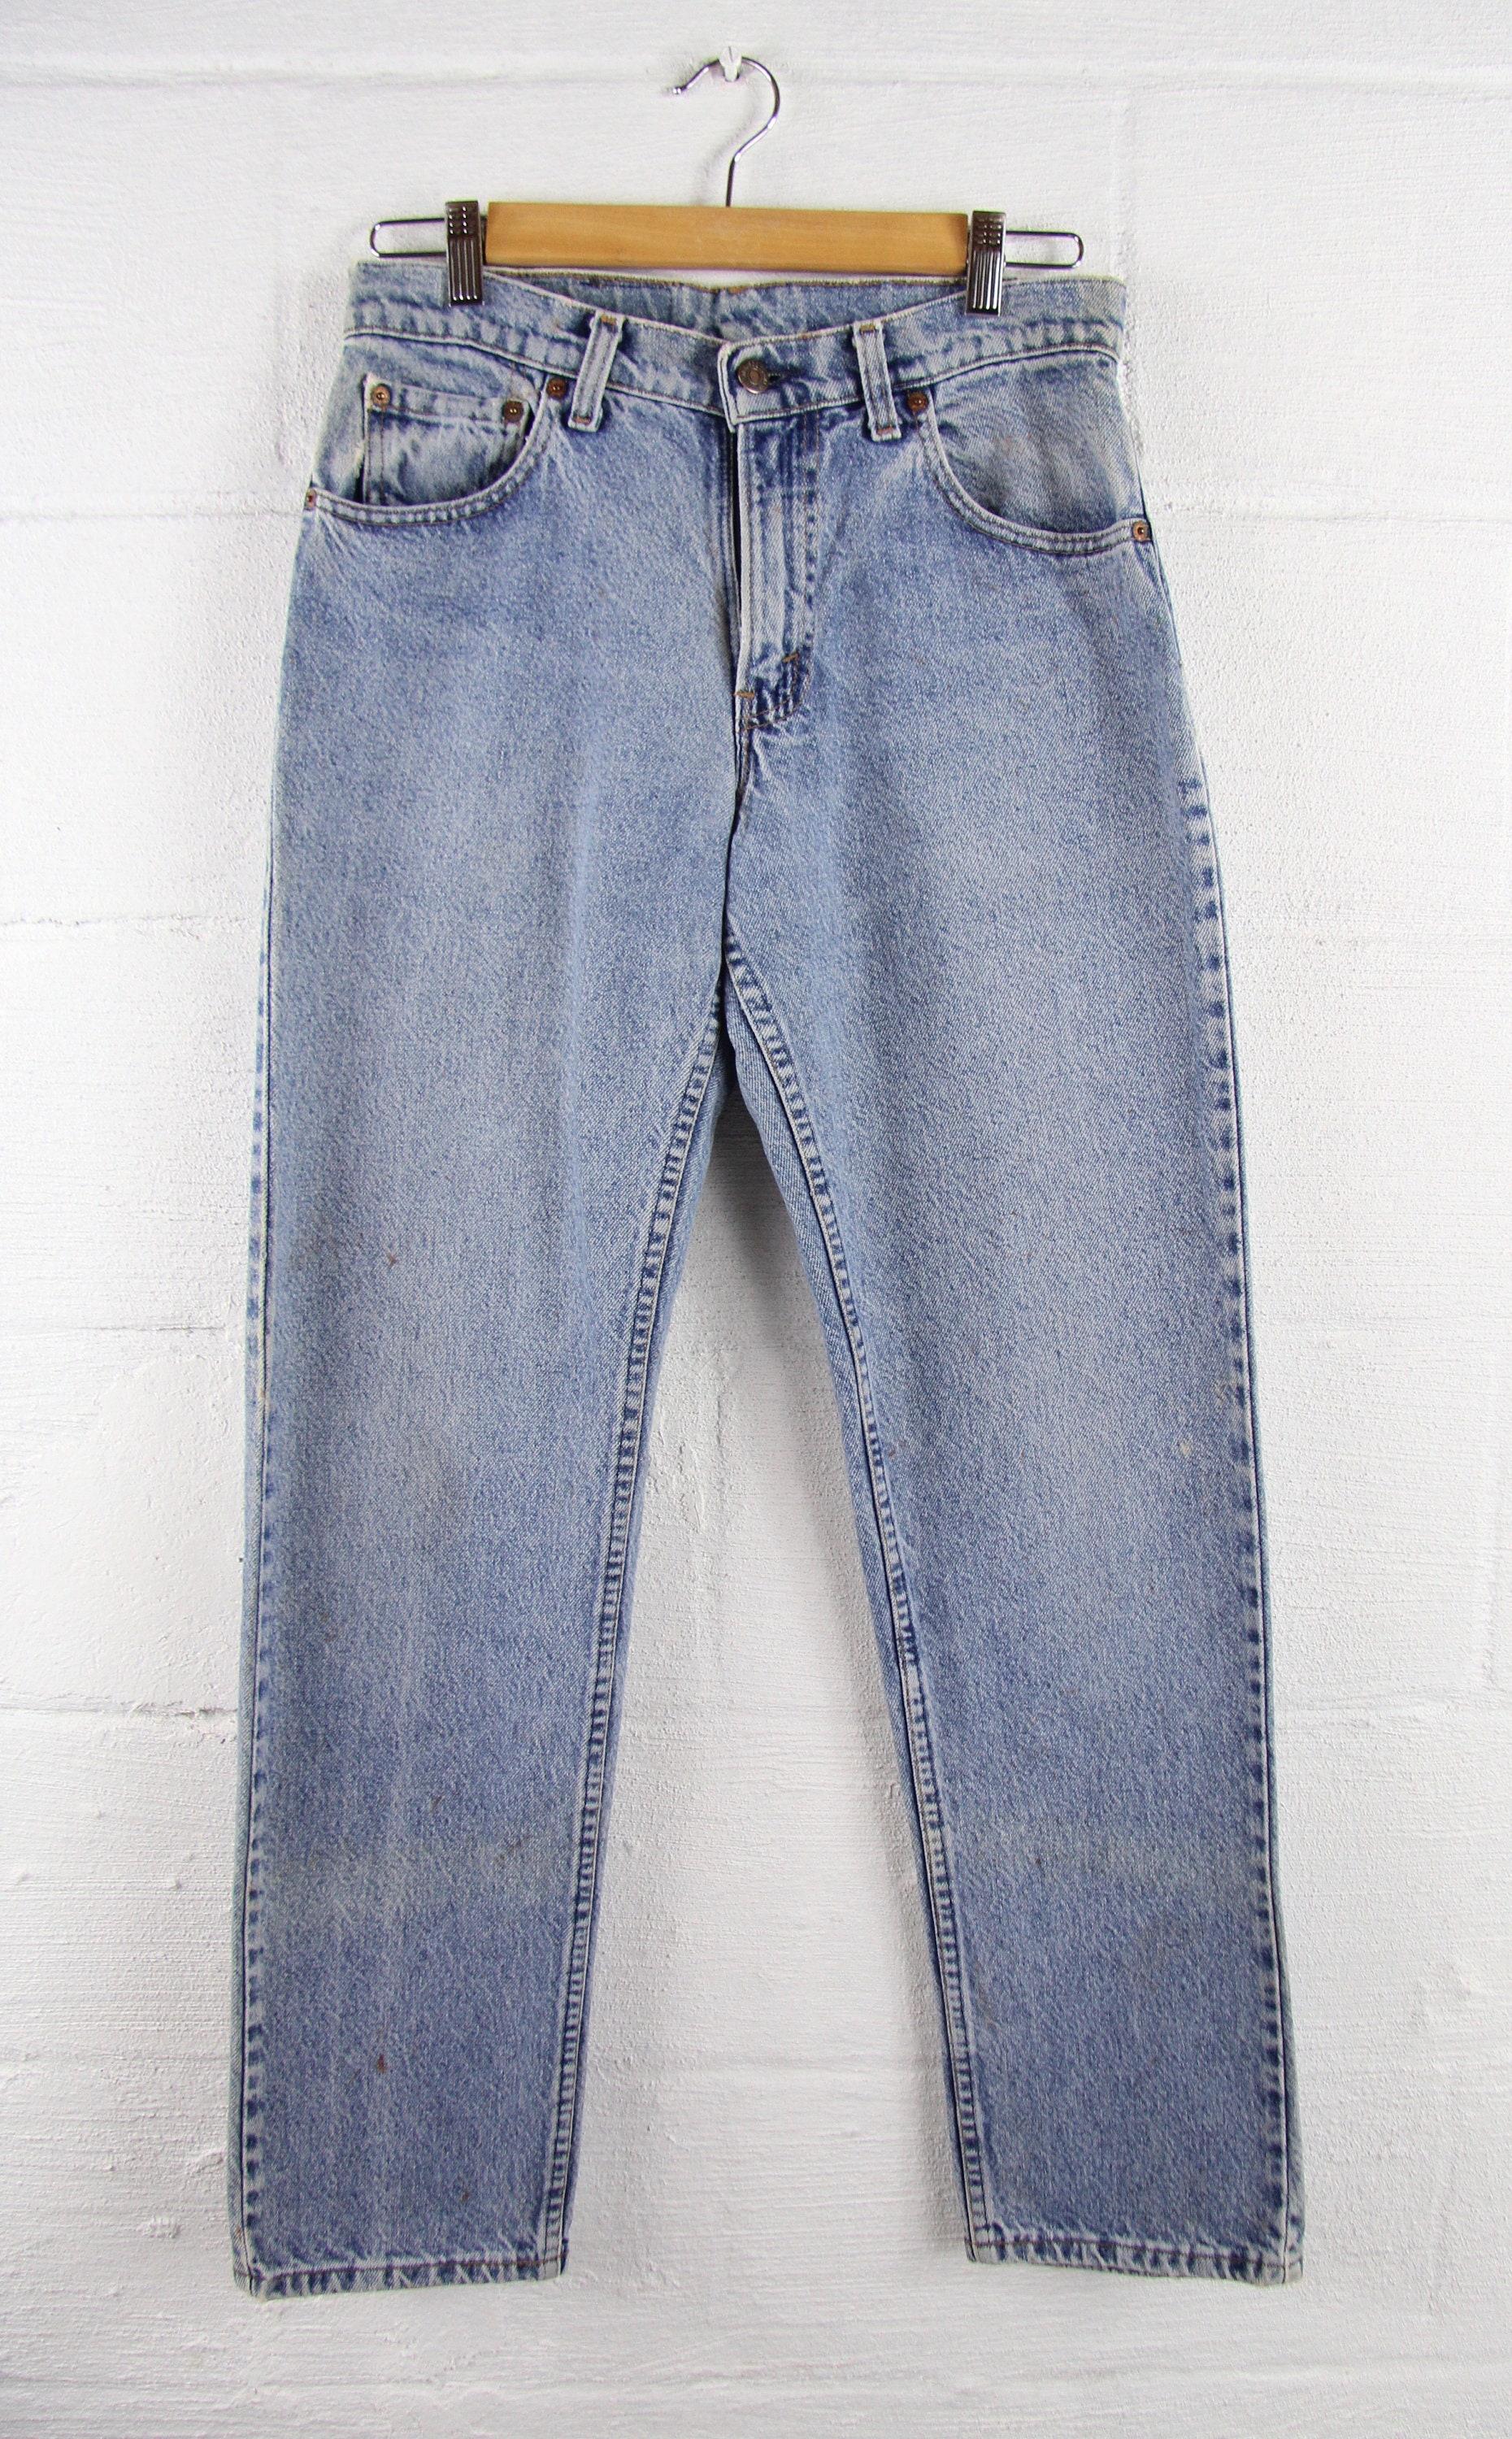 Levi's Vintage 505 Light Wash Jeans Grunge 30 x 31